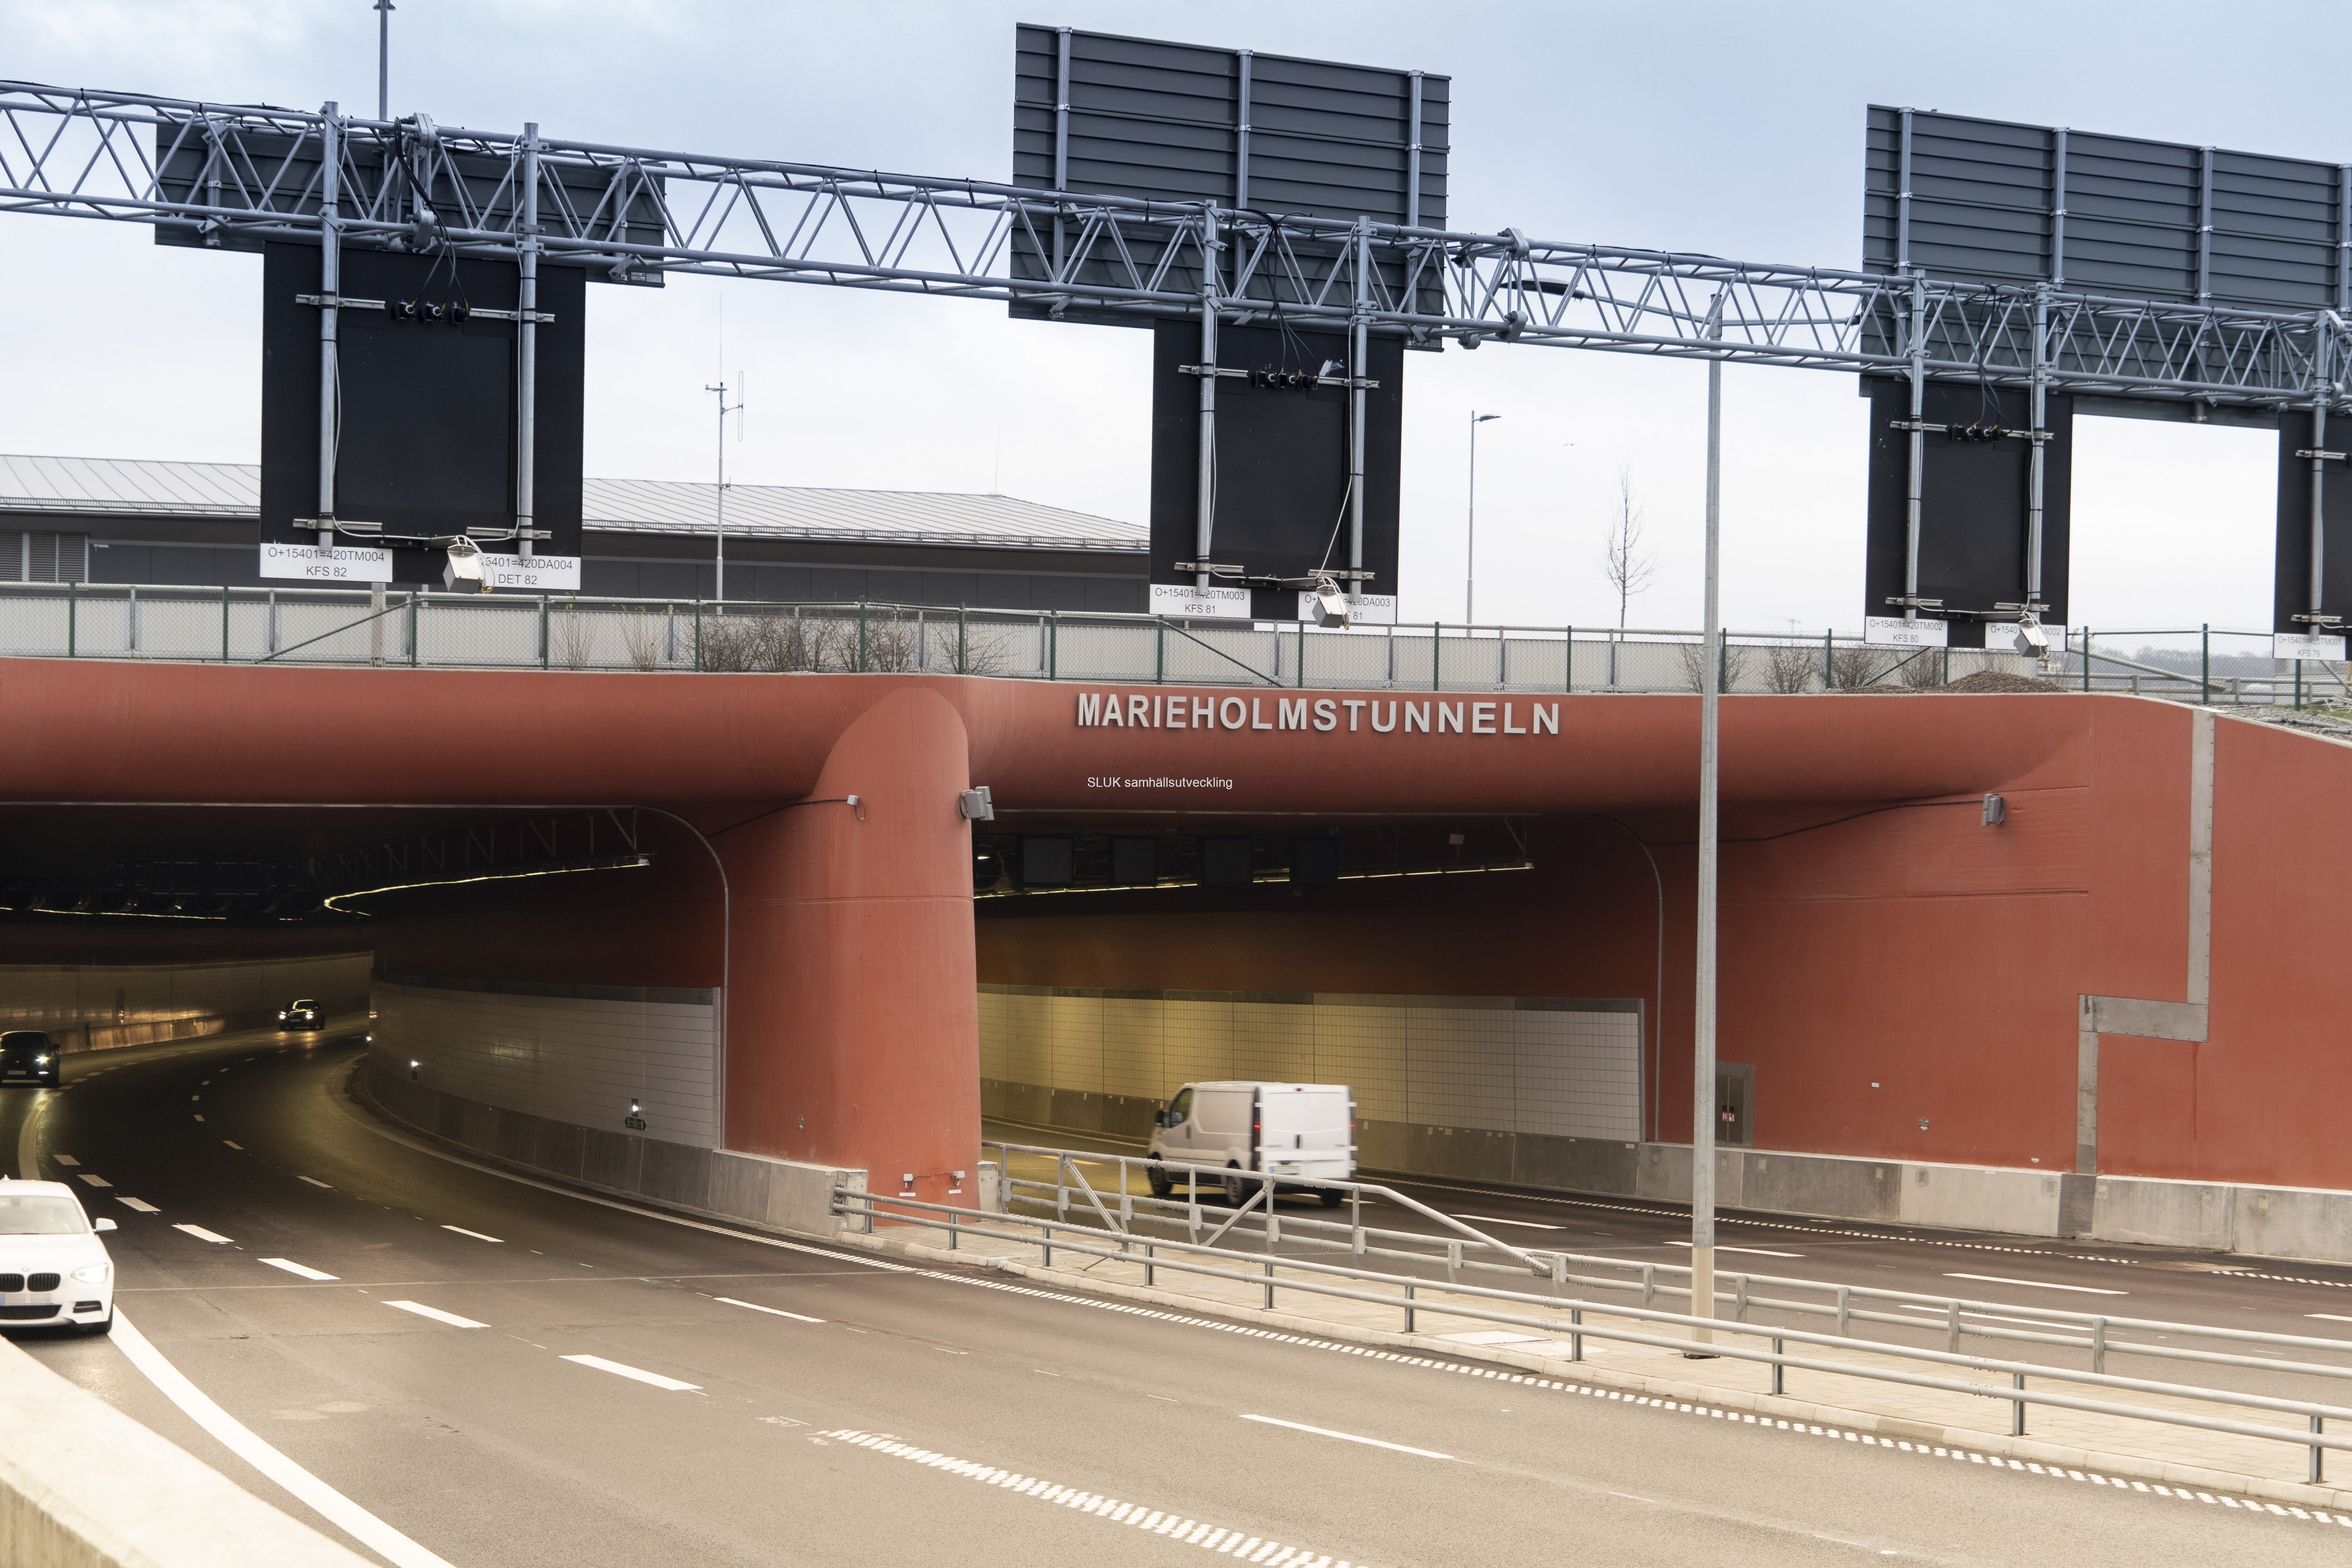 Marieholmstunneln öppnades för trafik i onsdags, den 16 december. Den är belägen norr om Tingstadstunneln och kommer att avlasta den med ca 50 000 fordon per dygn.